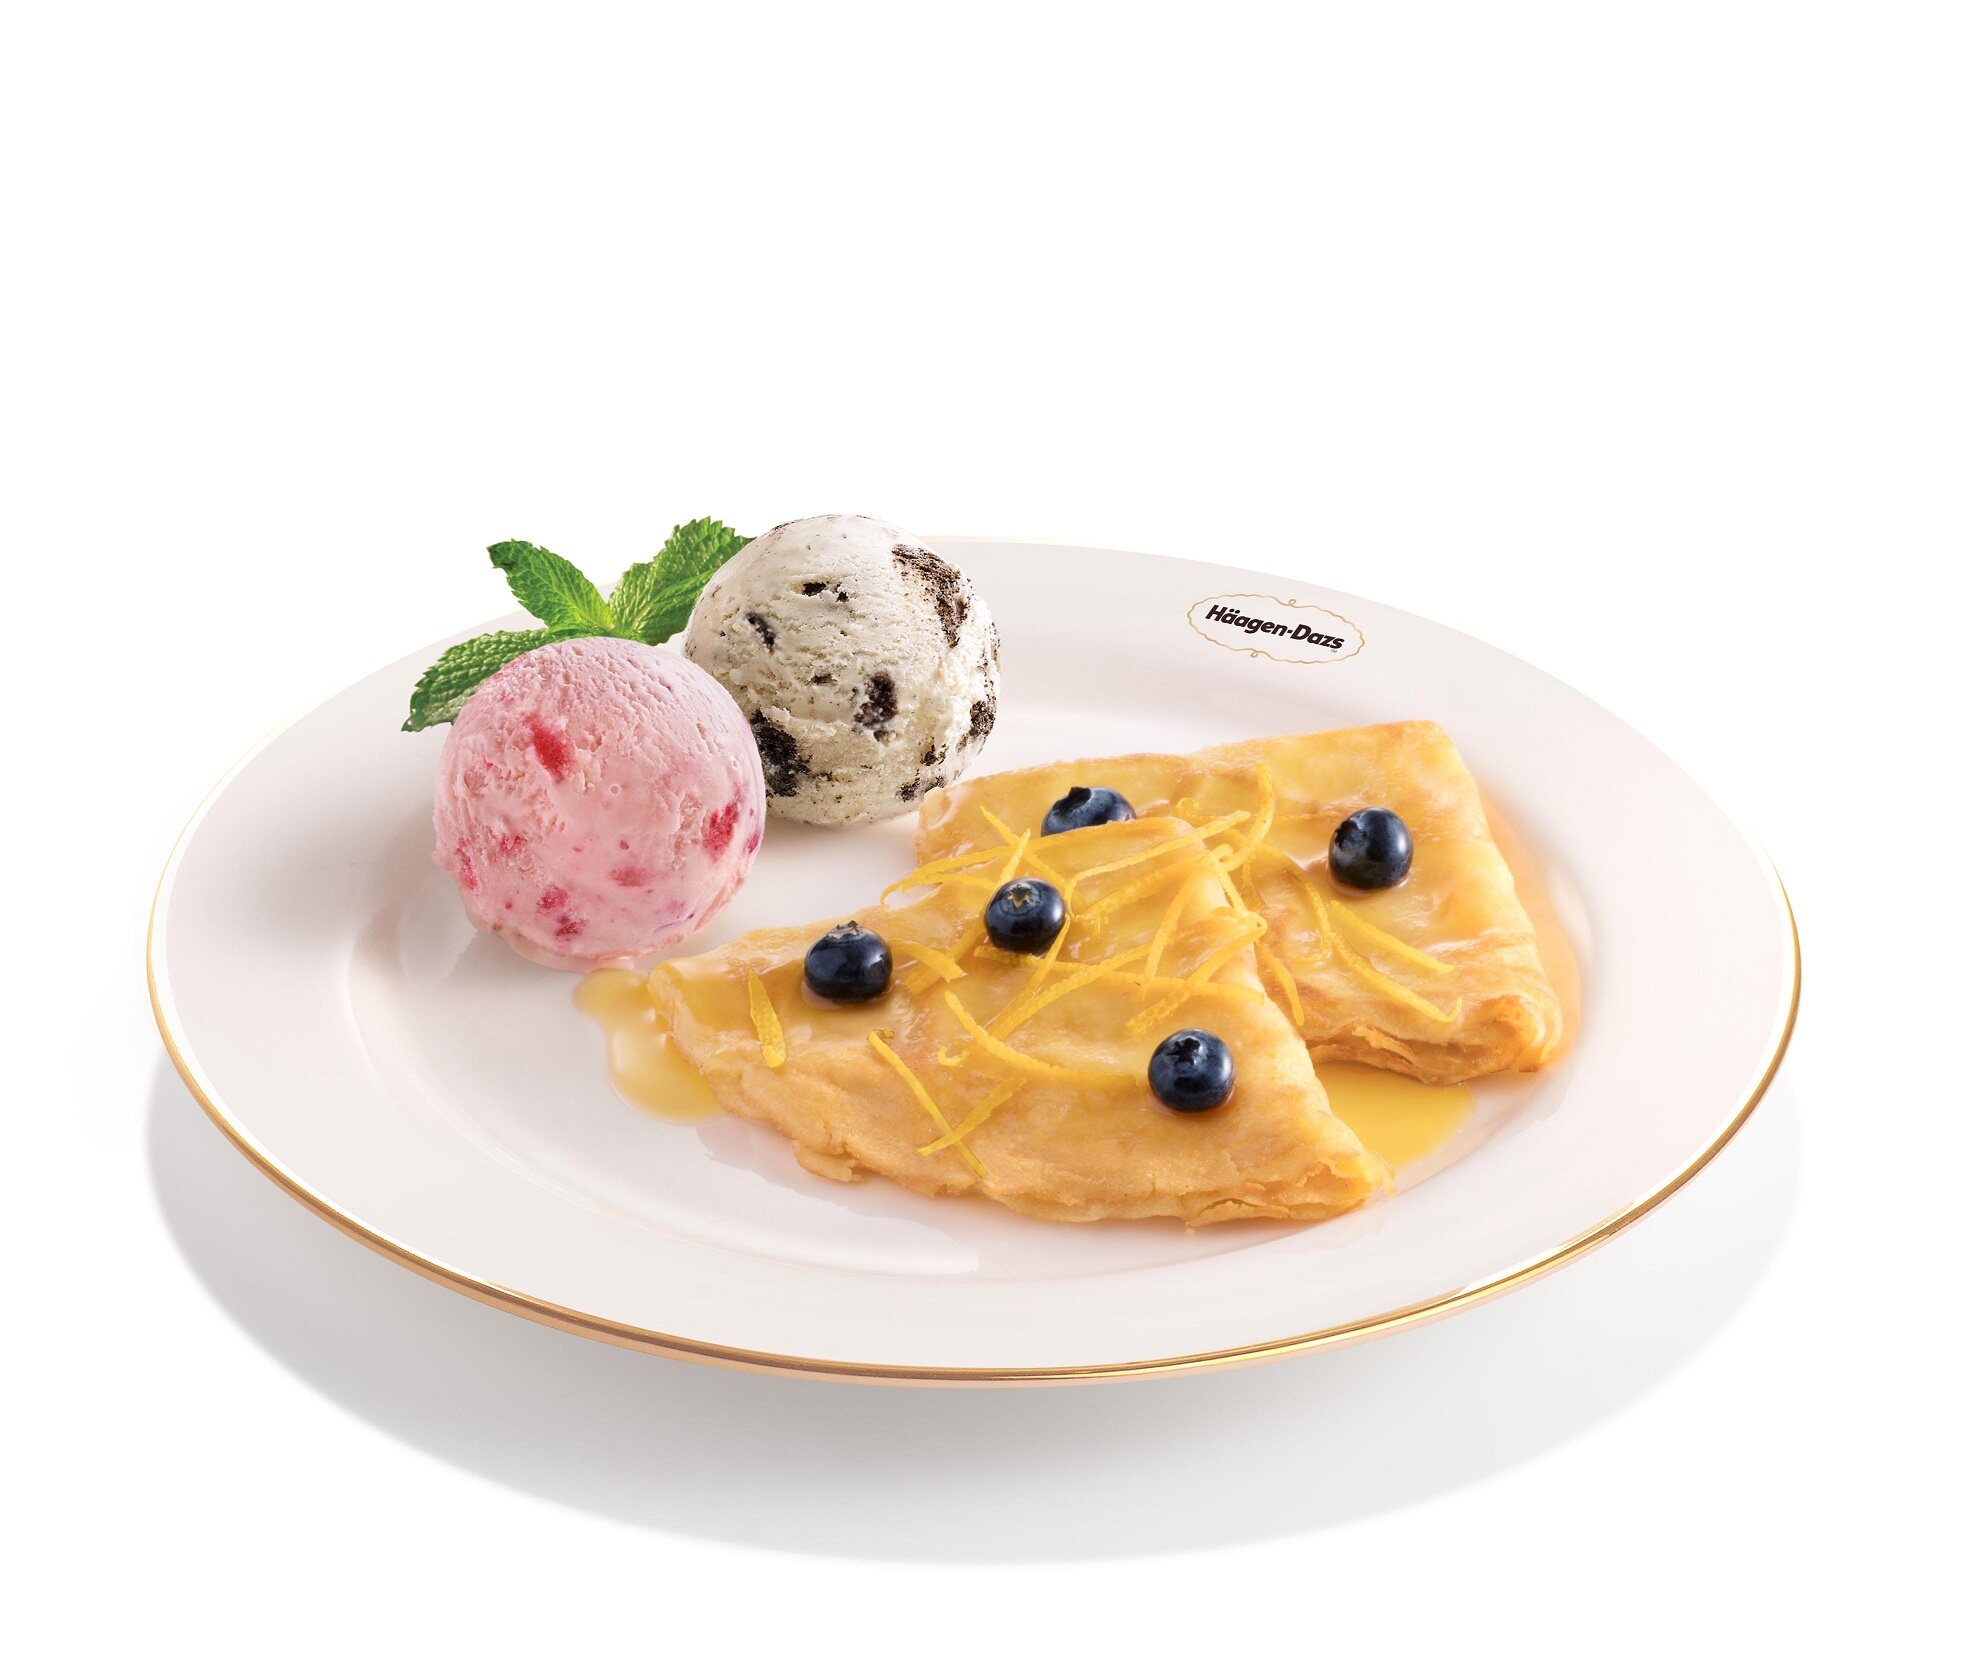 Häagen-Dazs-icecream-lifestyle-dessert-chill-windsor-causewaybay